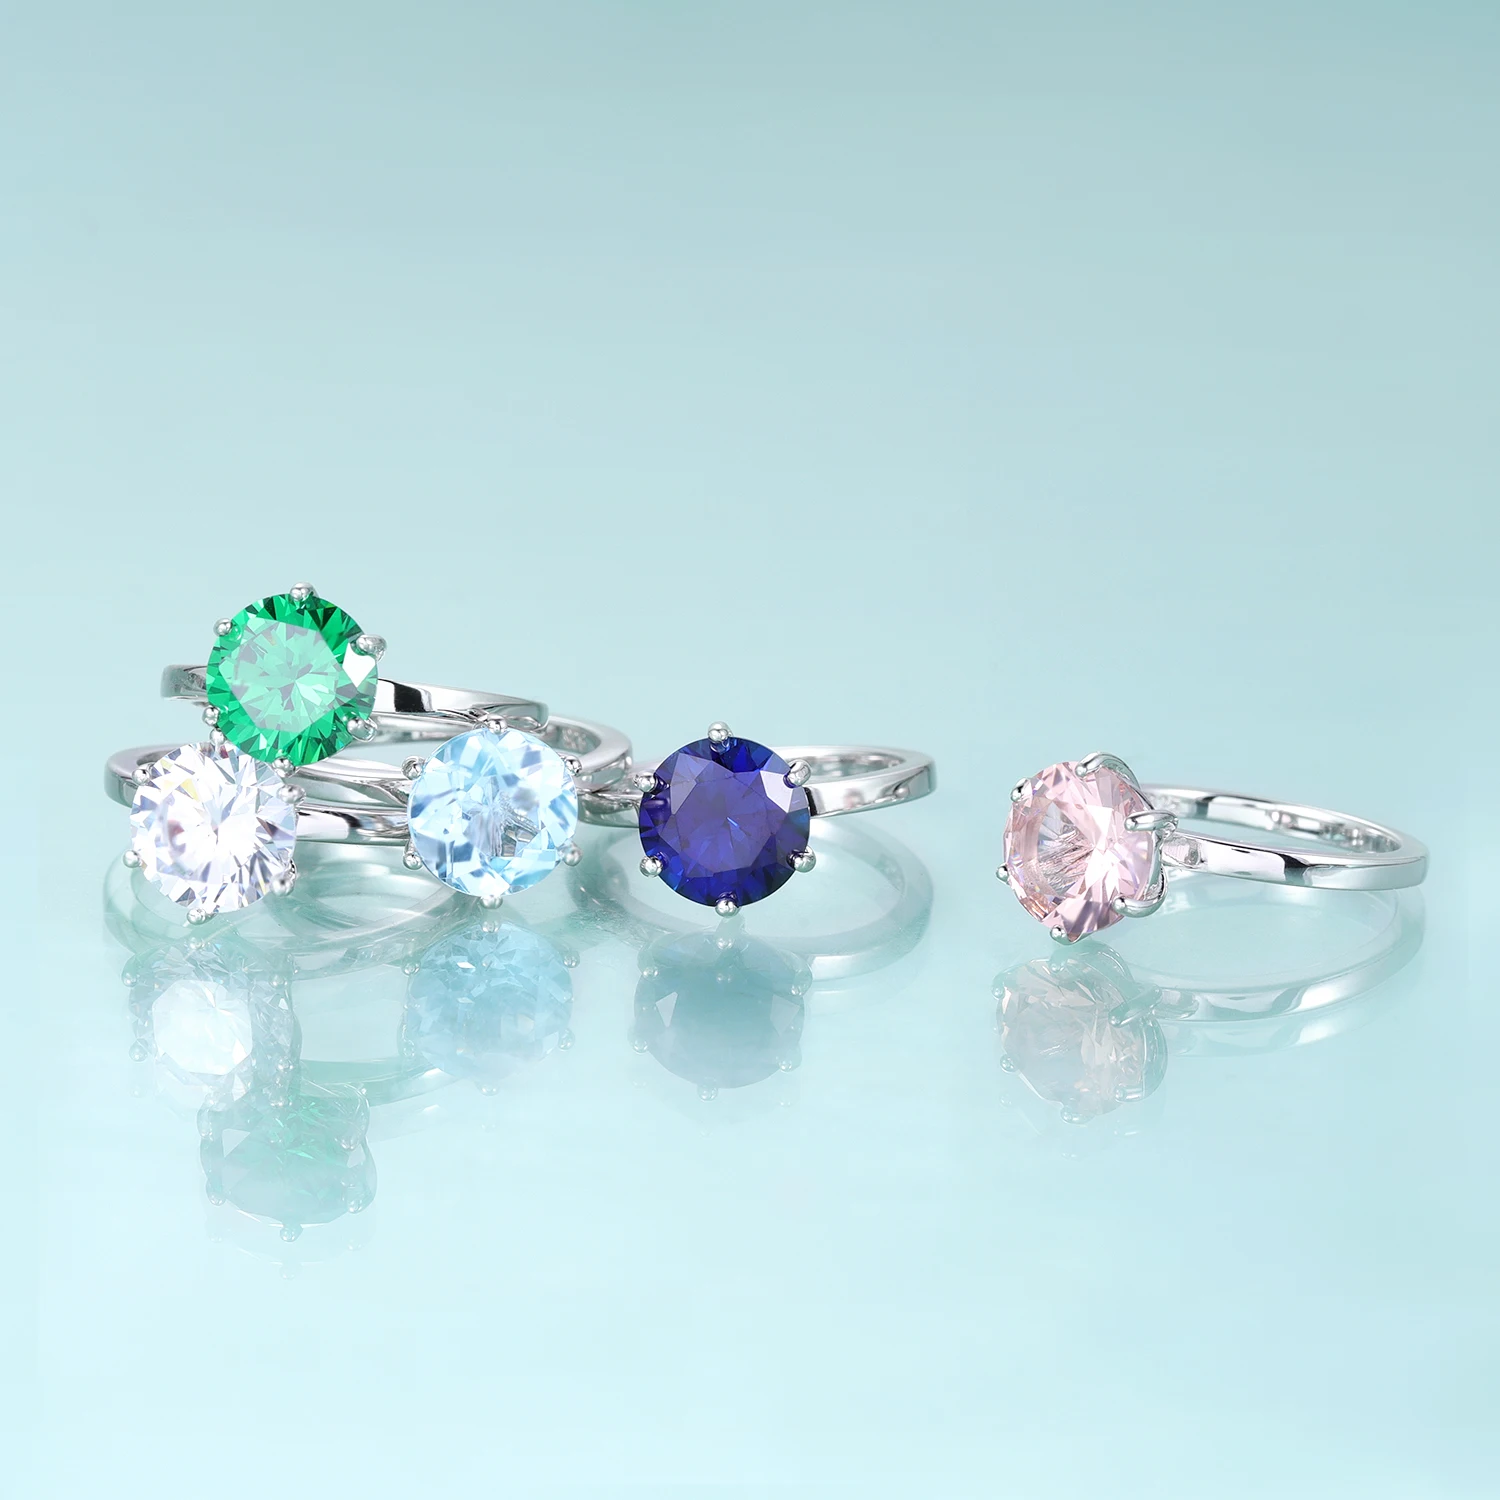 

Кольцо с камнем-талисманом GEM'S BEAUTY, классическое обручальное кольцо с круглым драгоценным камнем 8 мм, с шестью зубцами, стандартное серебряное кольцо, подарок для нее